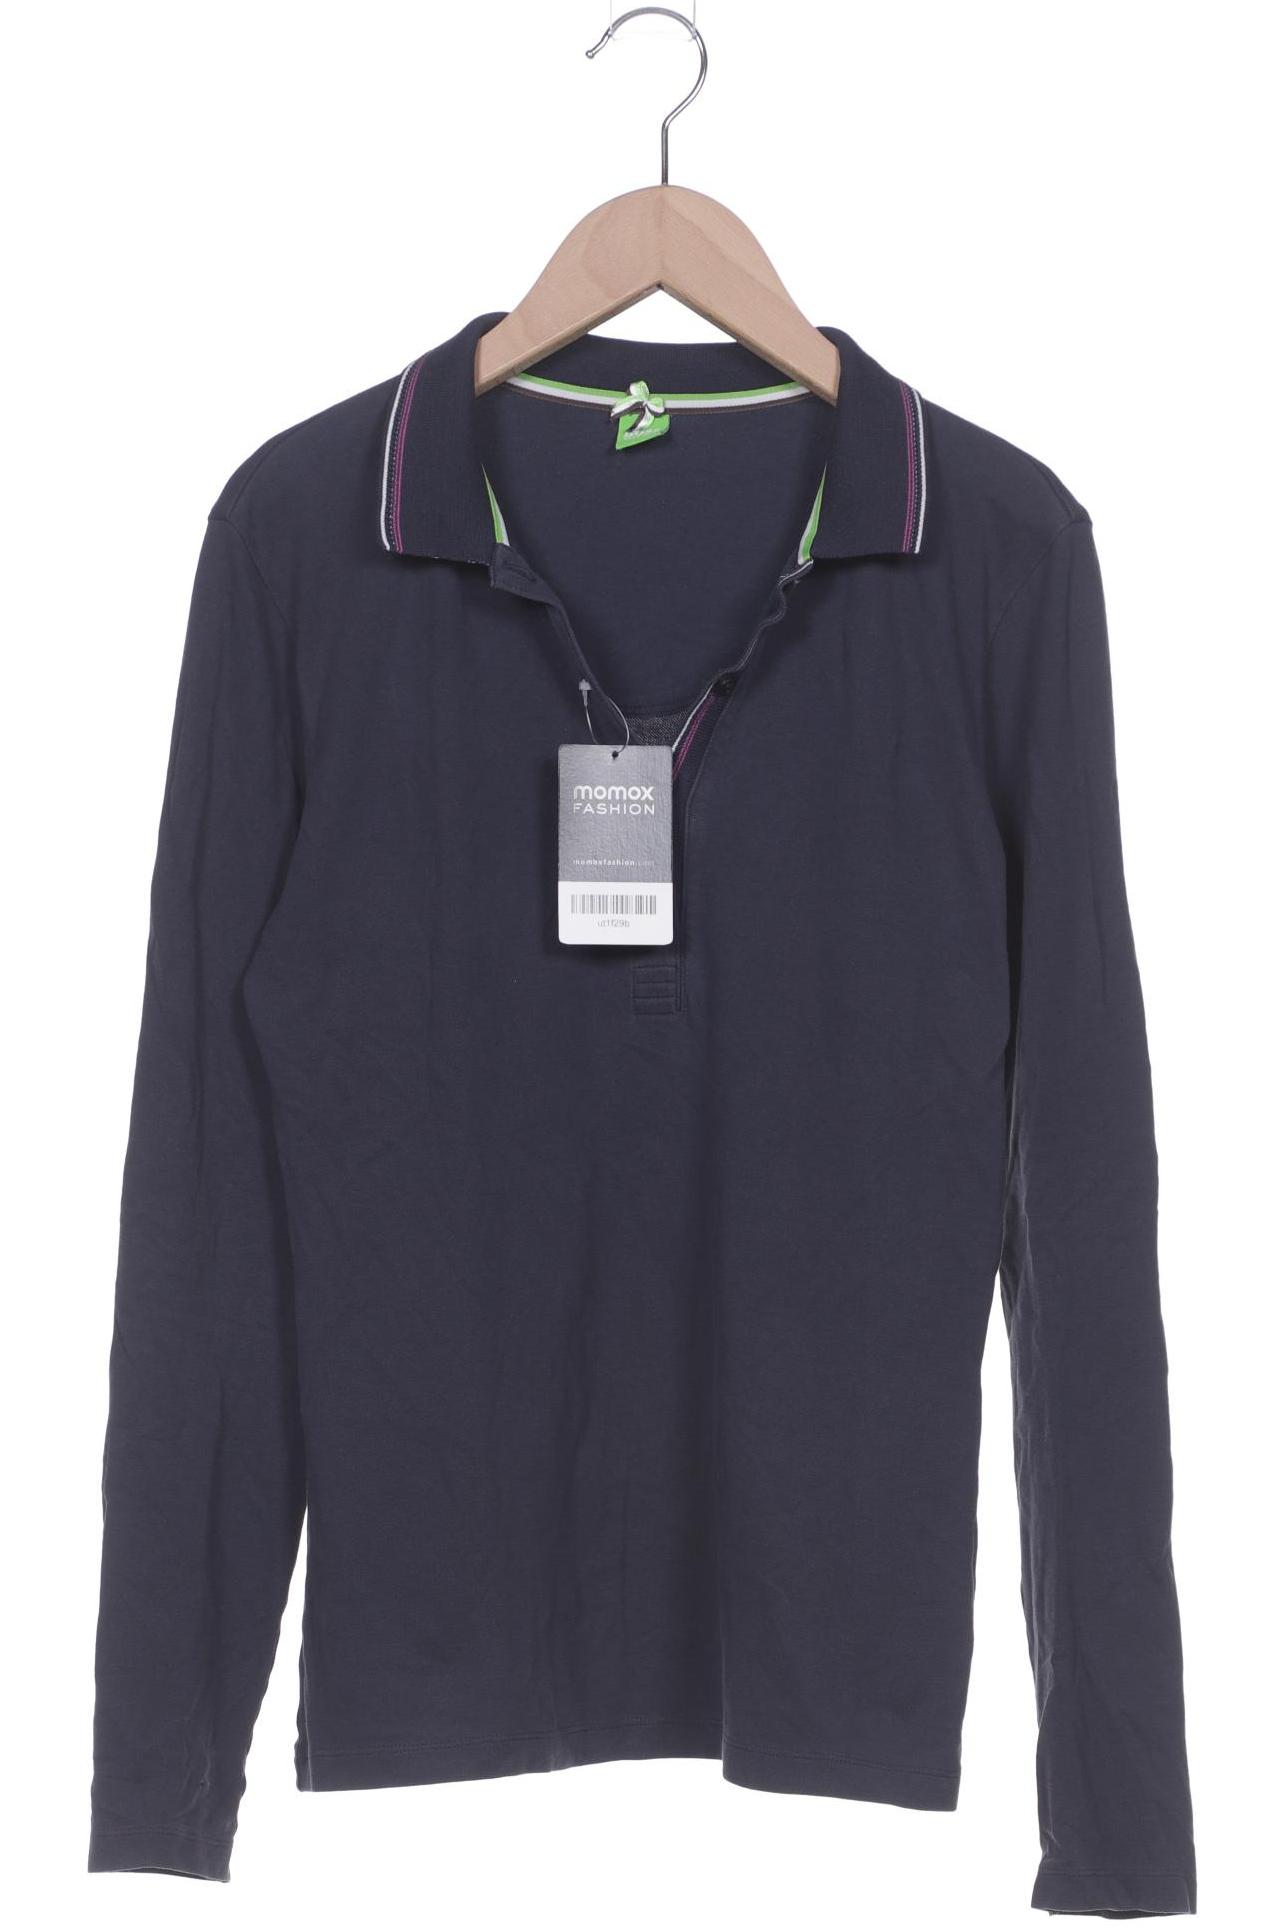 Boss Green Damen Poloshirt, marineblau, Gr. 36 von BOSS Green